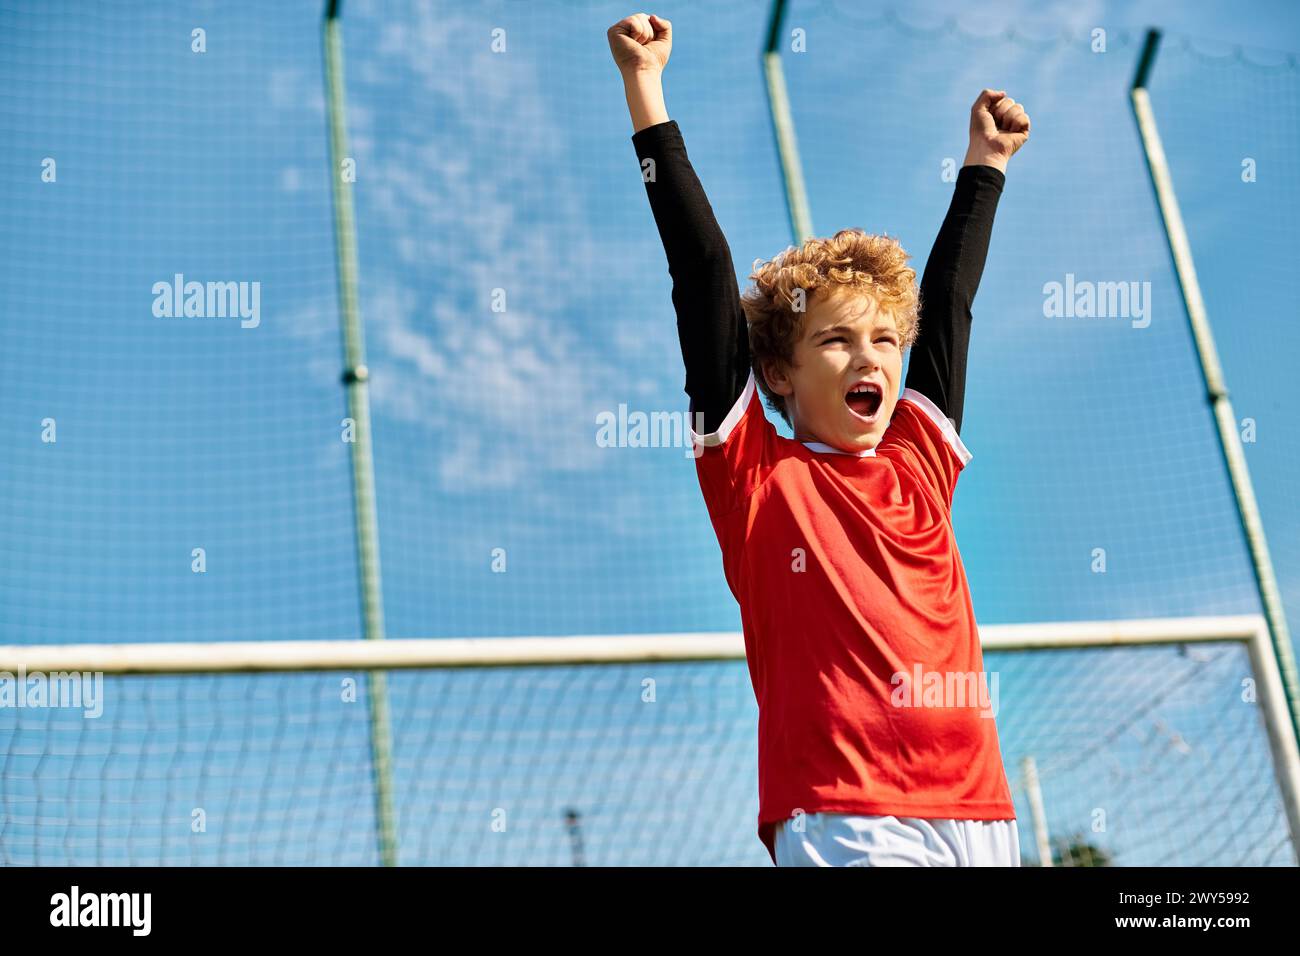 Ein kleiner Junge steht selbstbewusst auf dem Tennisplatz und hält einen Tennisschläger in der Hand. Sein konzentrierter Blick deutet auf seine Entschlossenheit und Leidenschaft hin Stockfoto